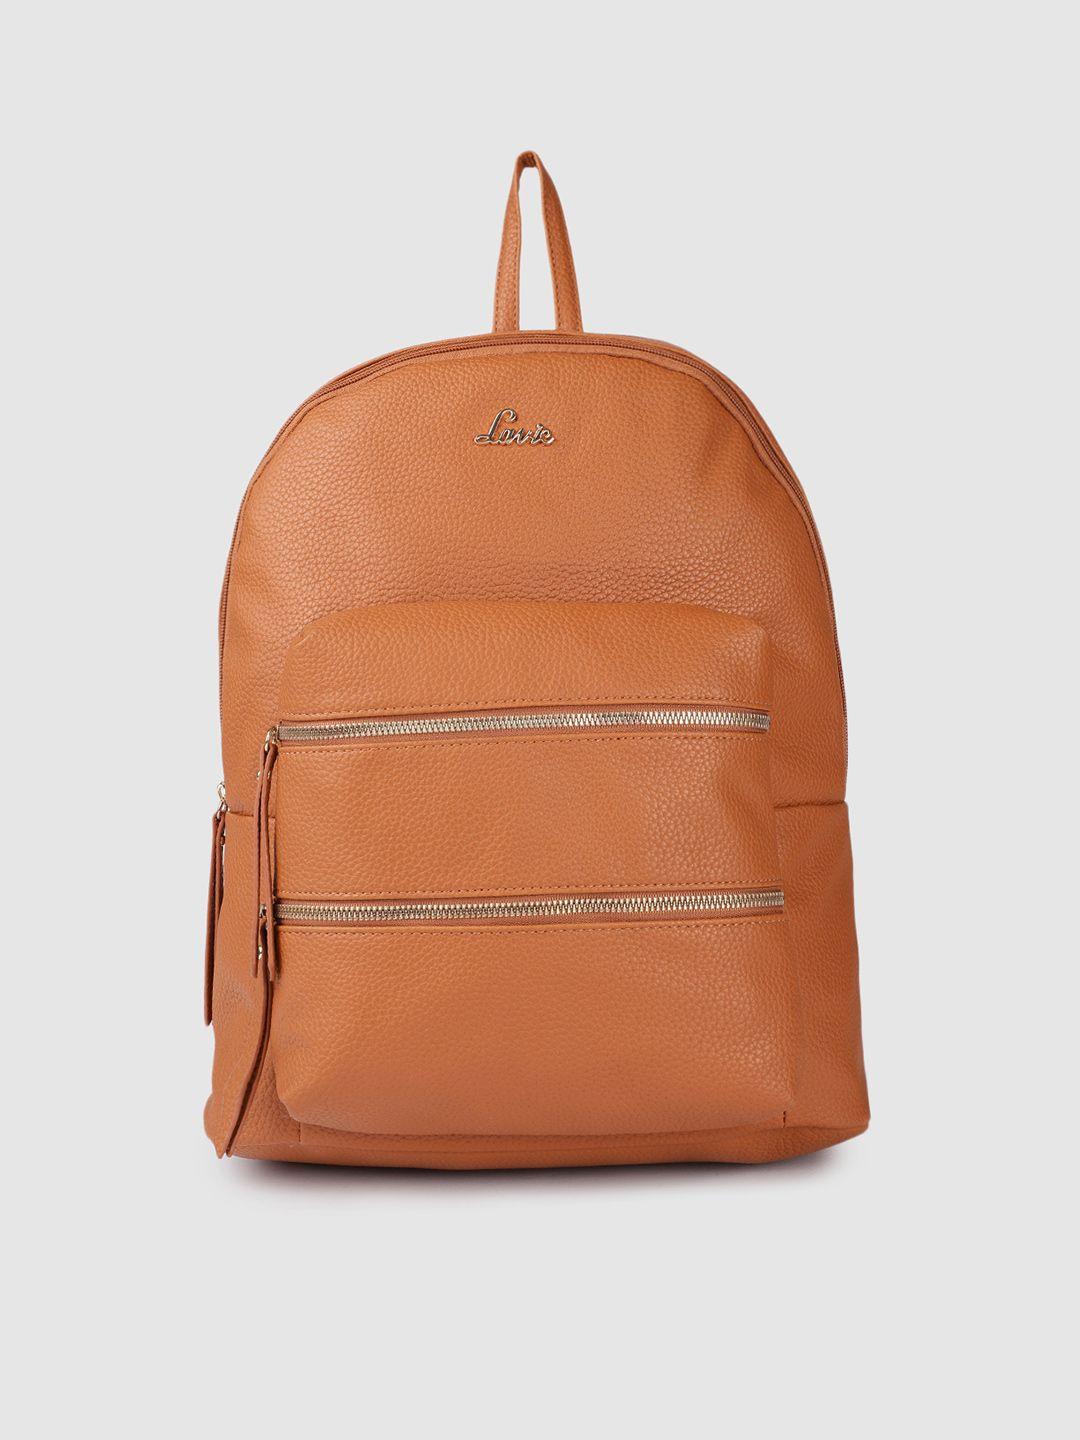 lavie hazel women tan brown laptop backpack